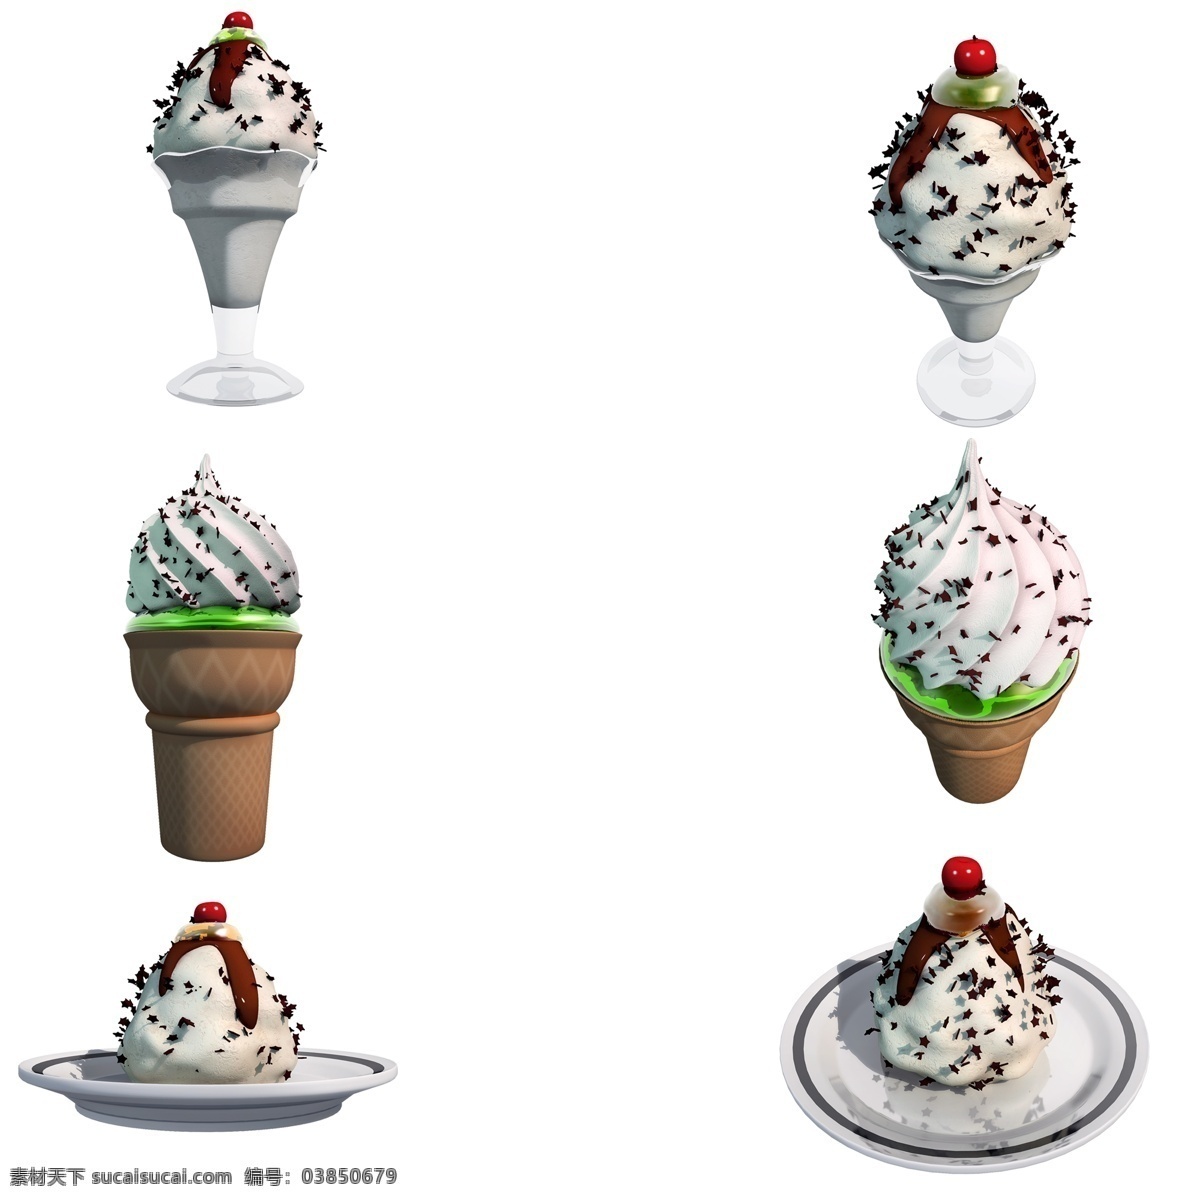 夏季 雪糕 甜品 套 图 冰淇淋 甜筒 精致 仿真 清凉 质感 夏天 套图